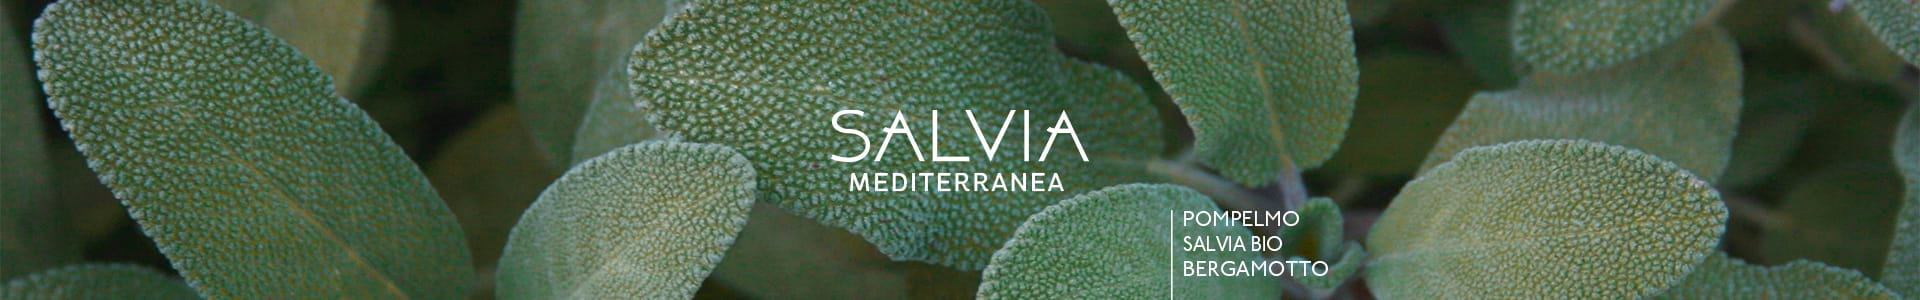 Salvia-Mediterranea